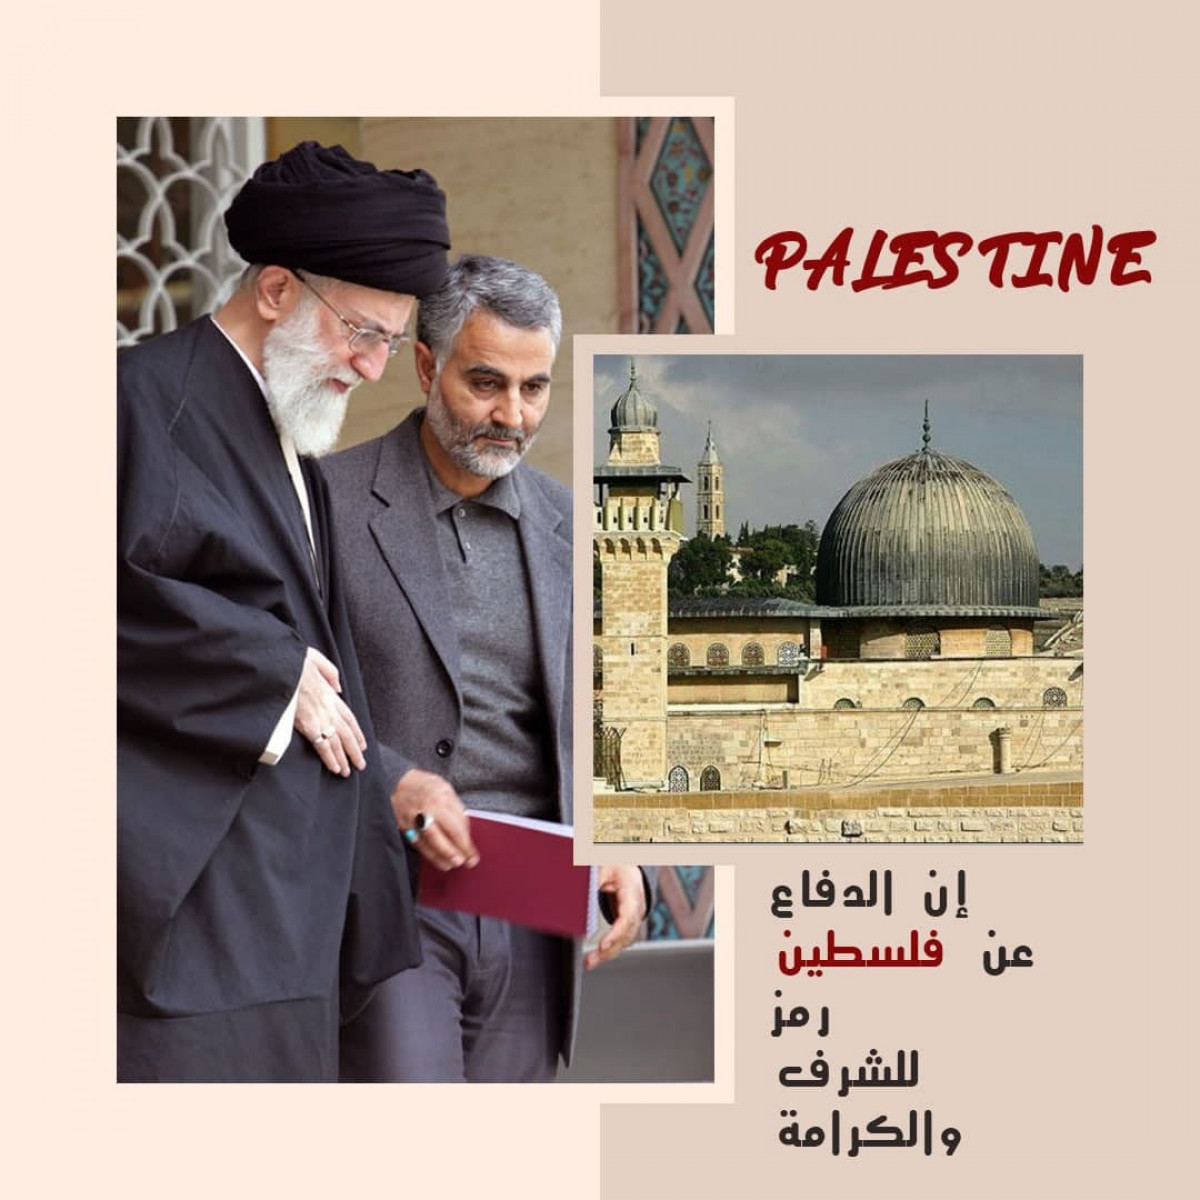 قائد فيلق القدس : إن الدفاع عن الفلسطين رمز للشرف والكرامة